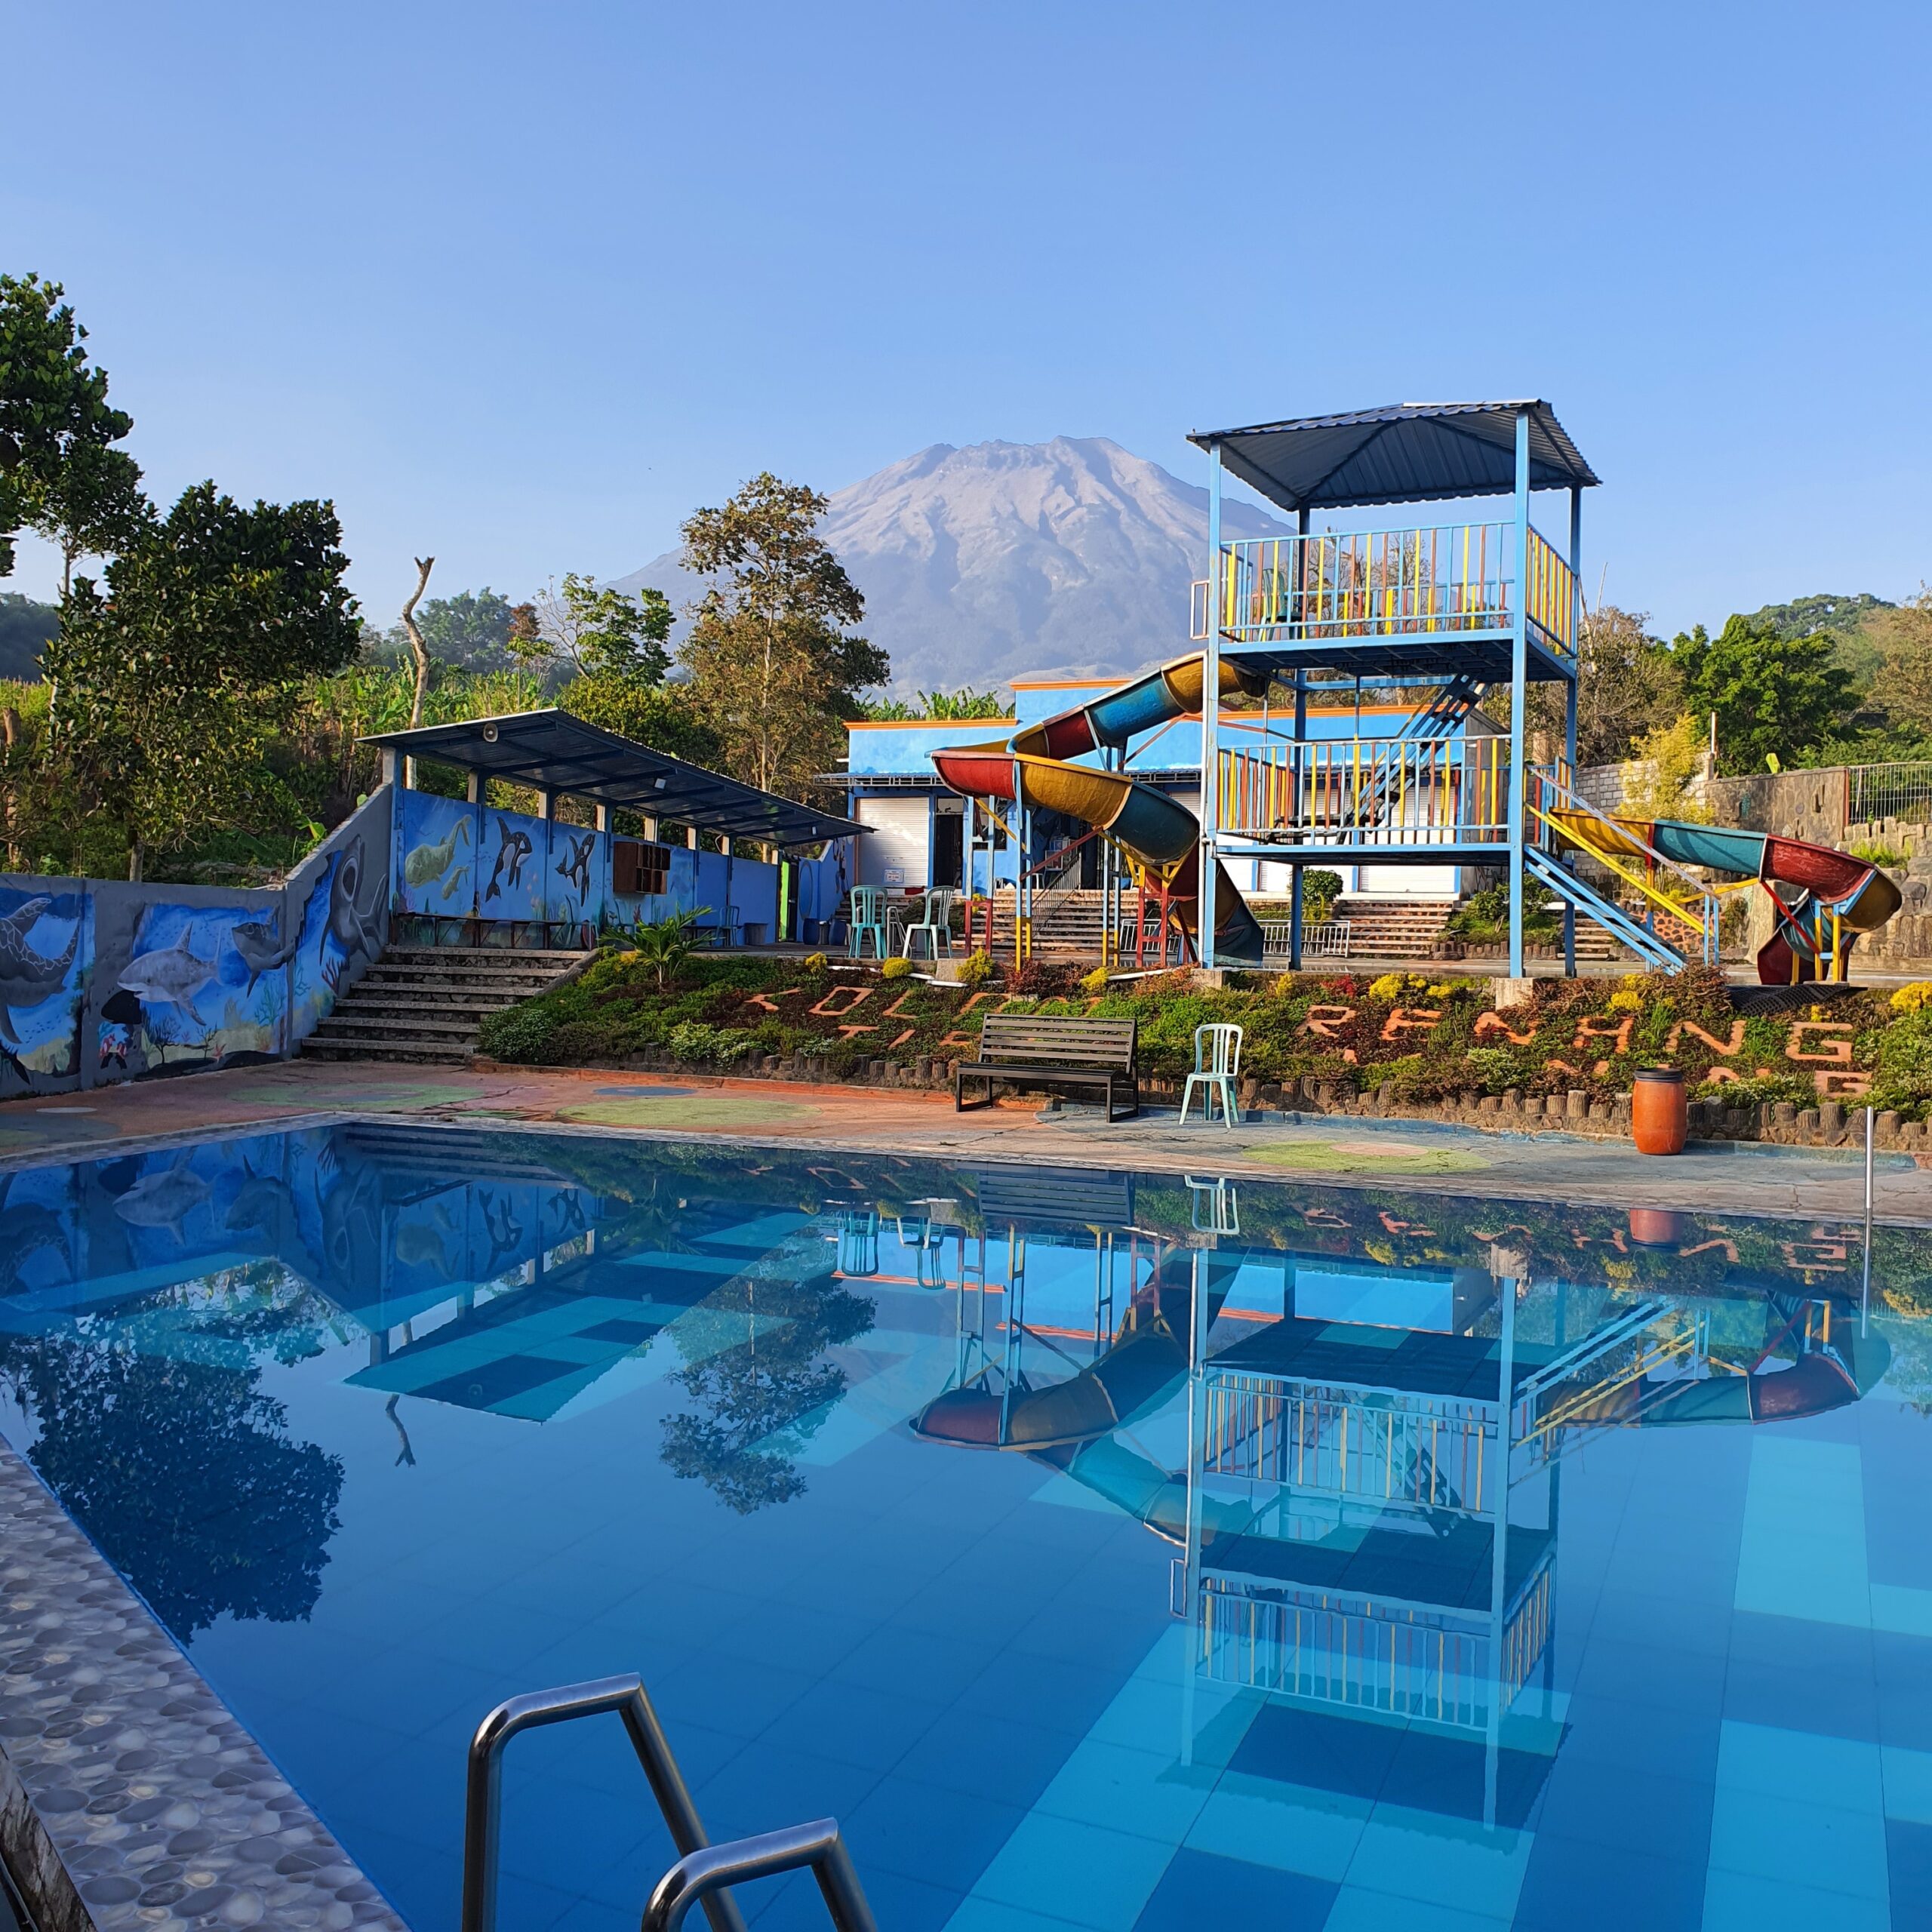 Jasa perawatan kolam renang Gunung Kidul